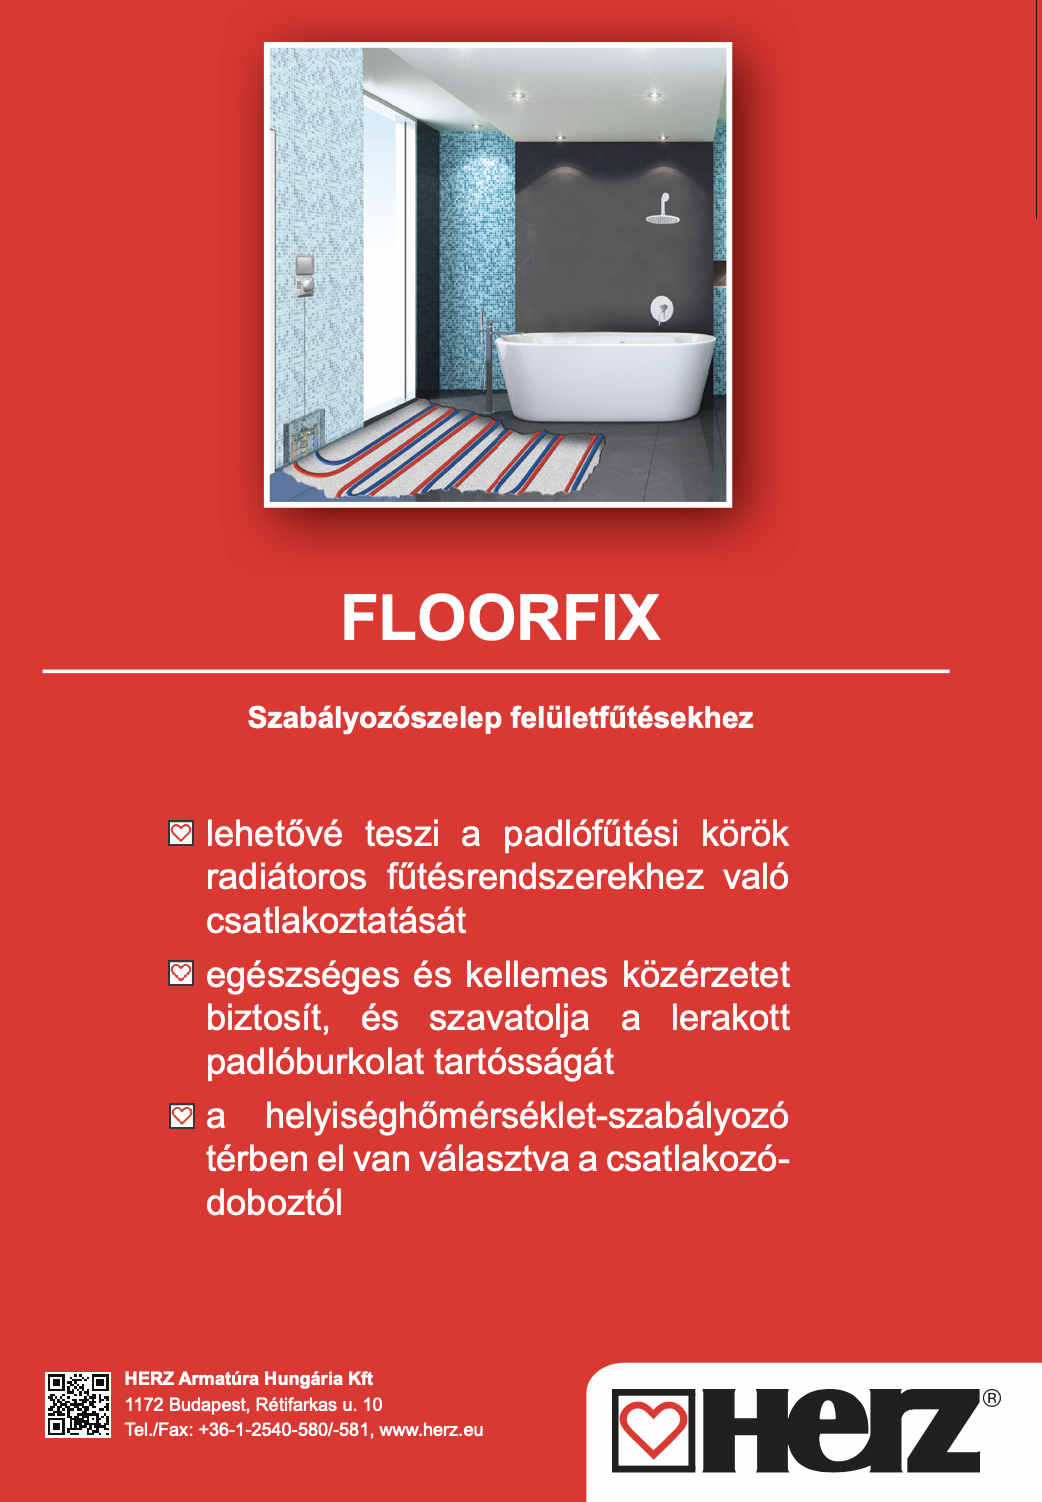 Floorfix